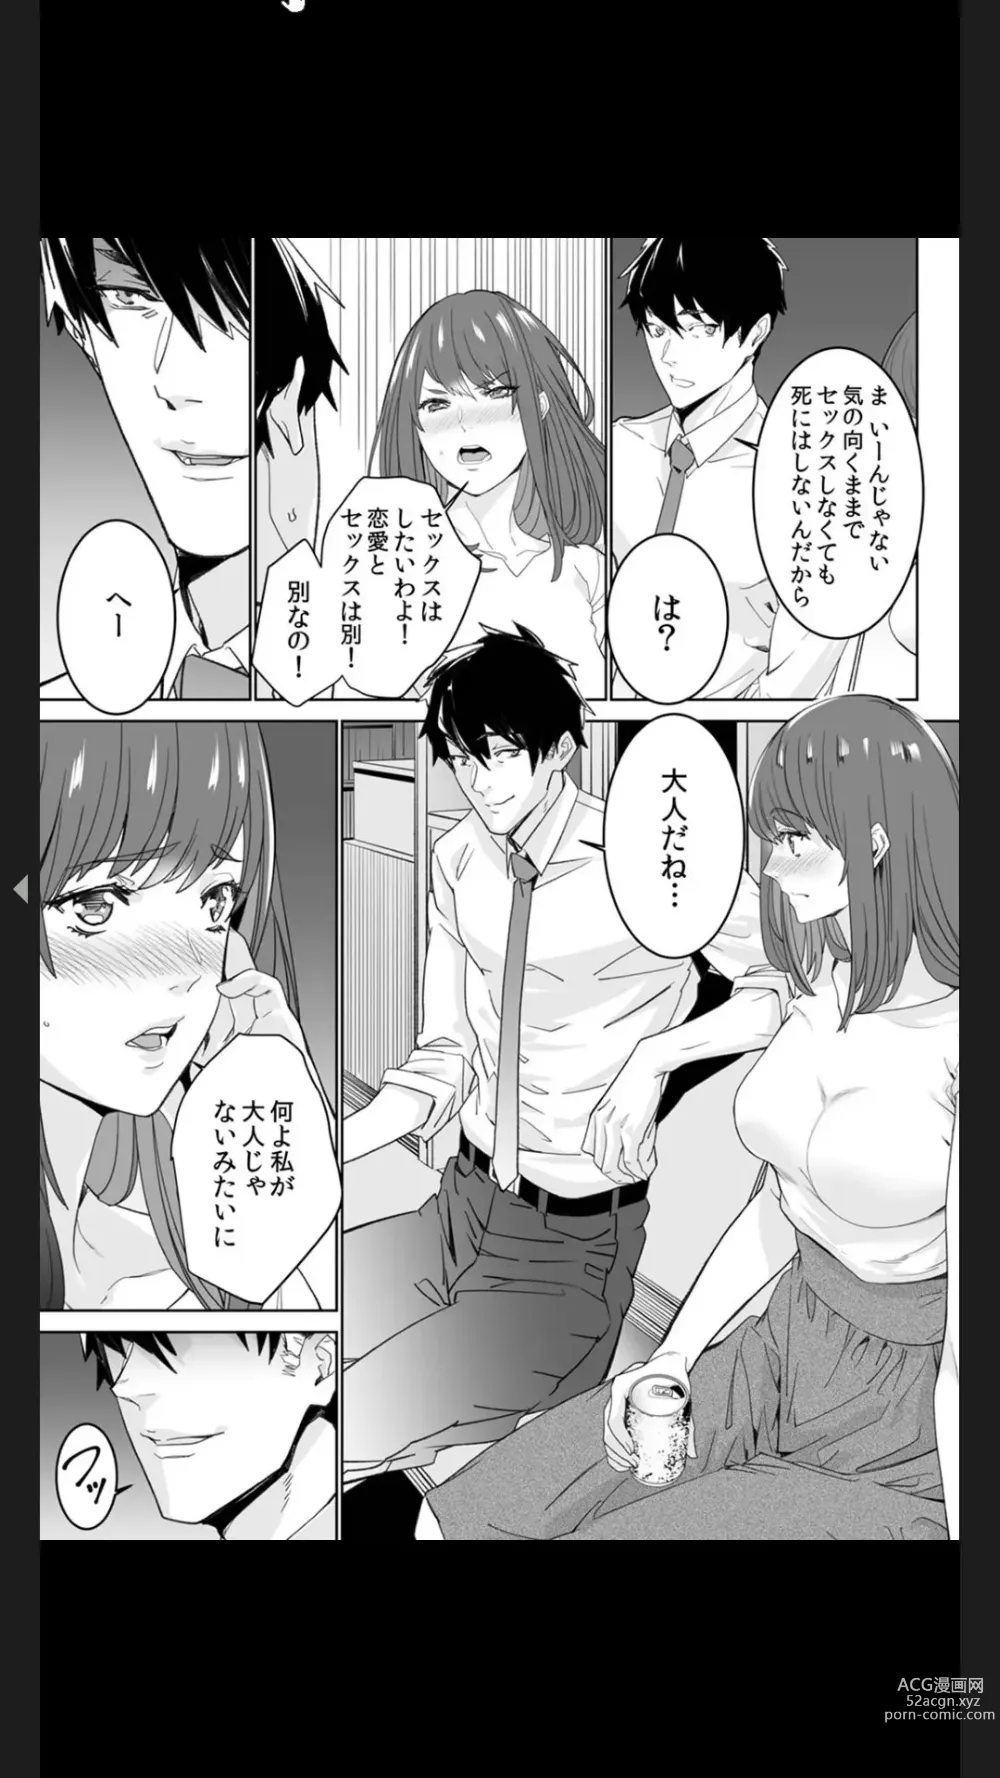 Page 9 of manga Koitsu no SEX, Do-S Sugi...!